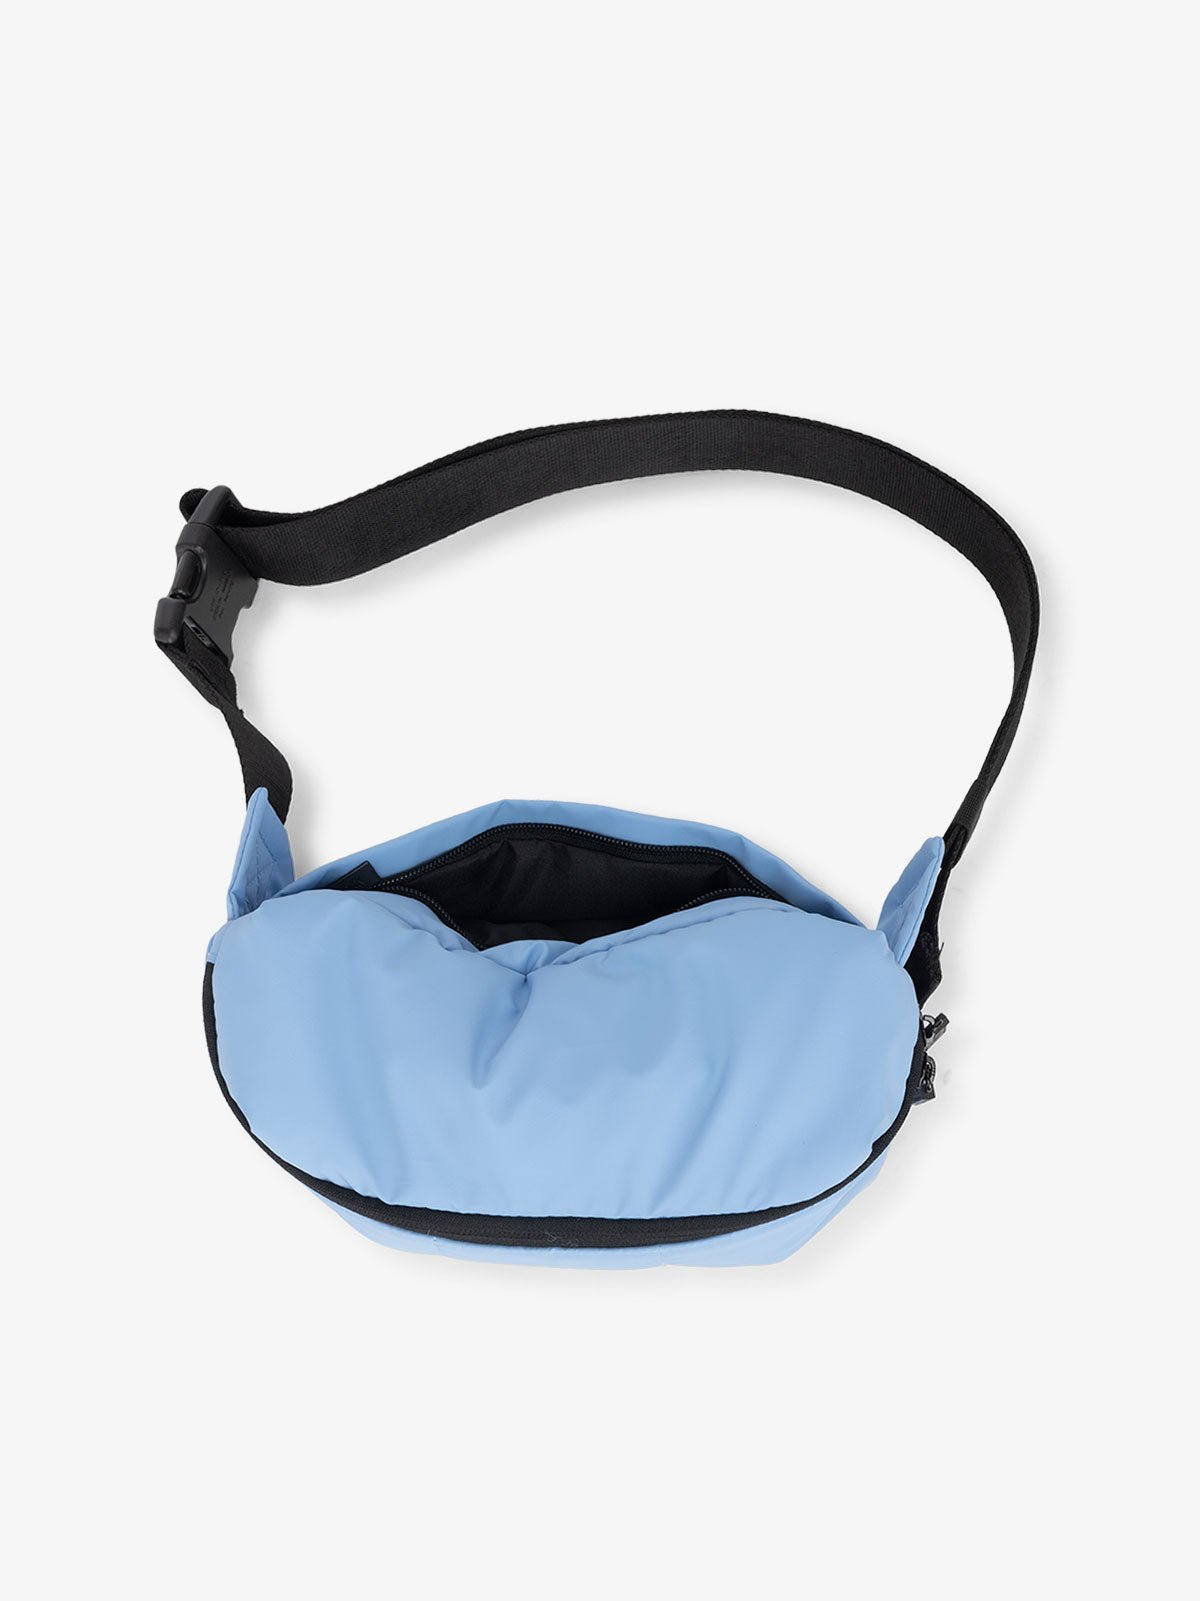 CALPAK Luka Belt Bag with adjustable strap and back pocket in winter sky